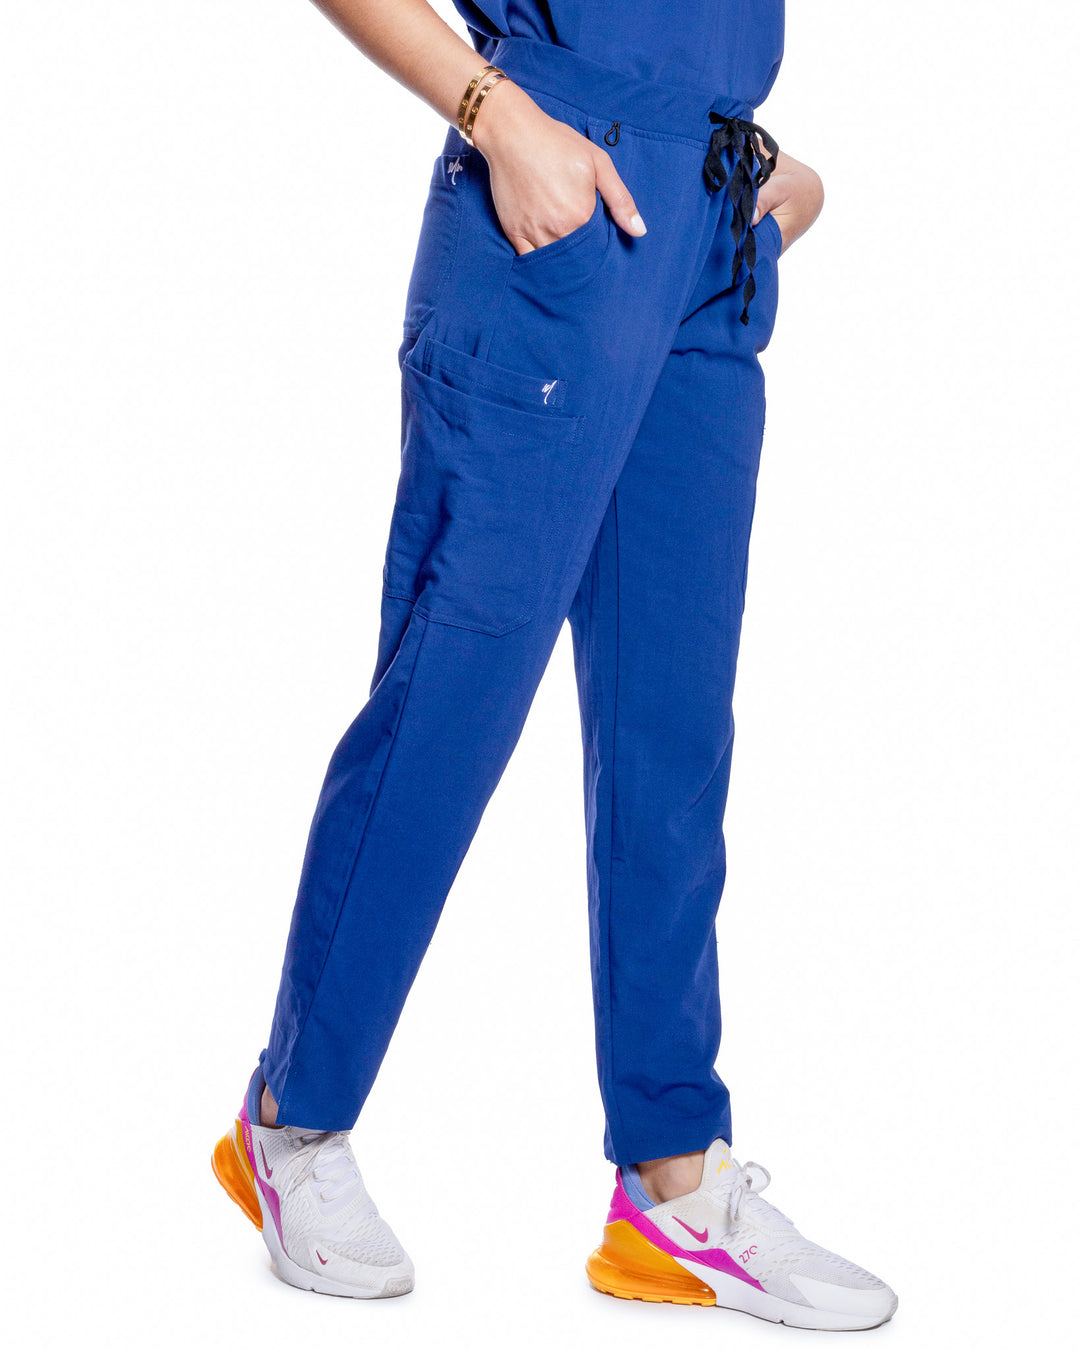 Women's Navy Blue Classic Scrub Pants – Mim Scrubs - Millennials